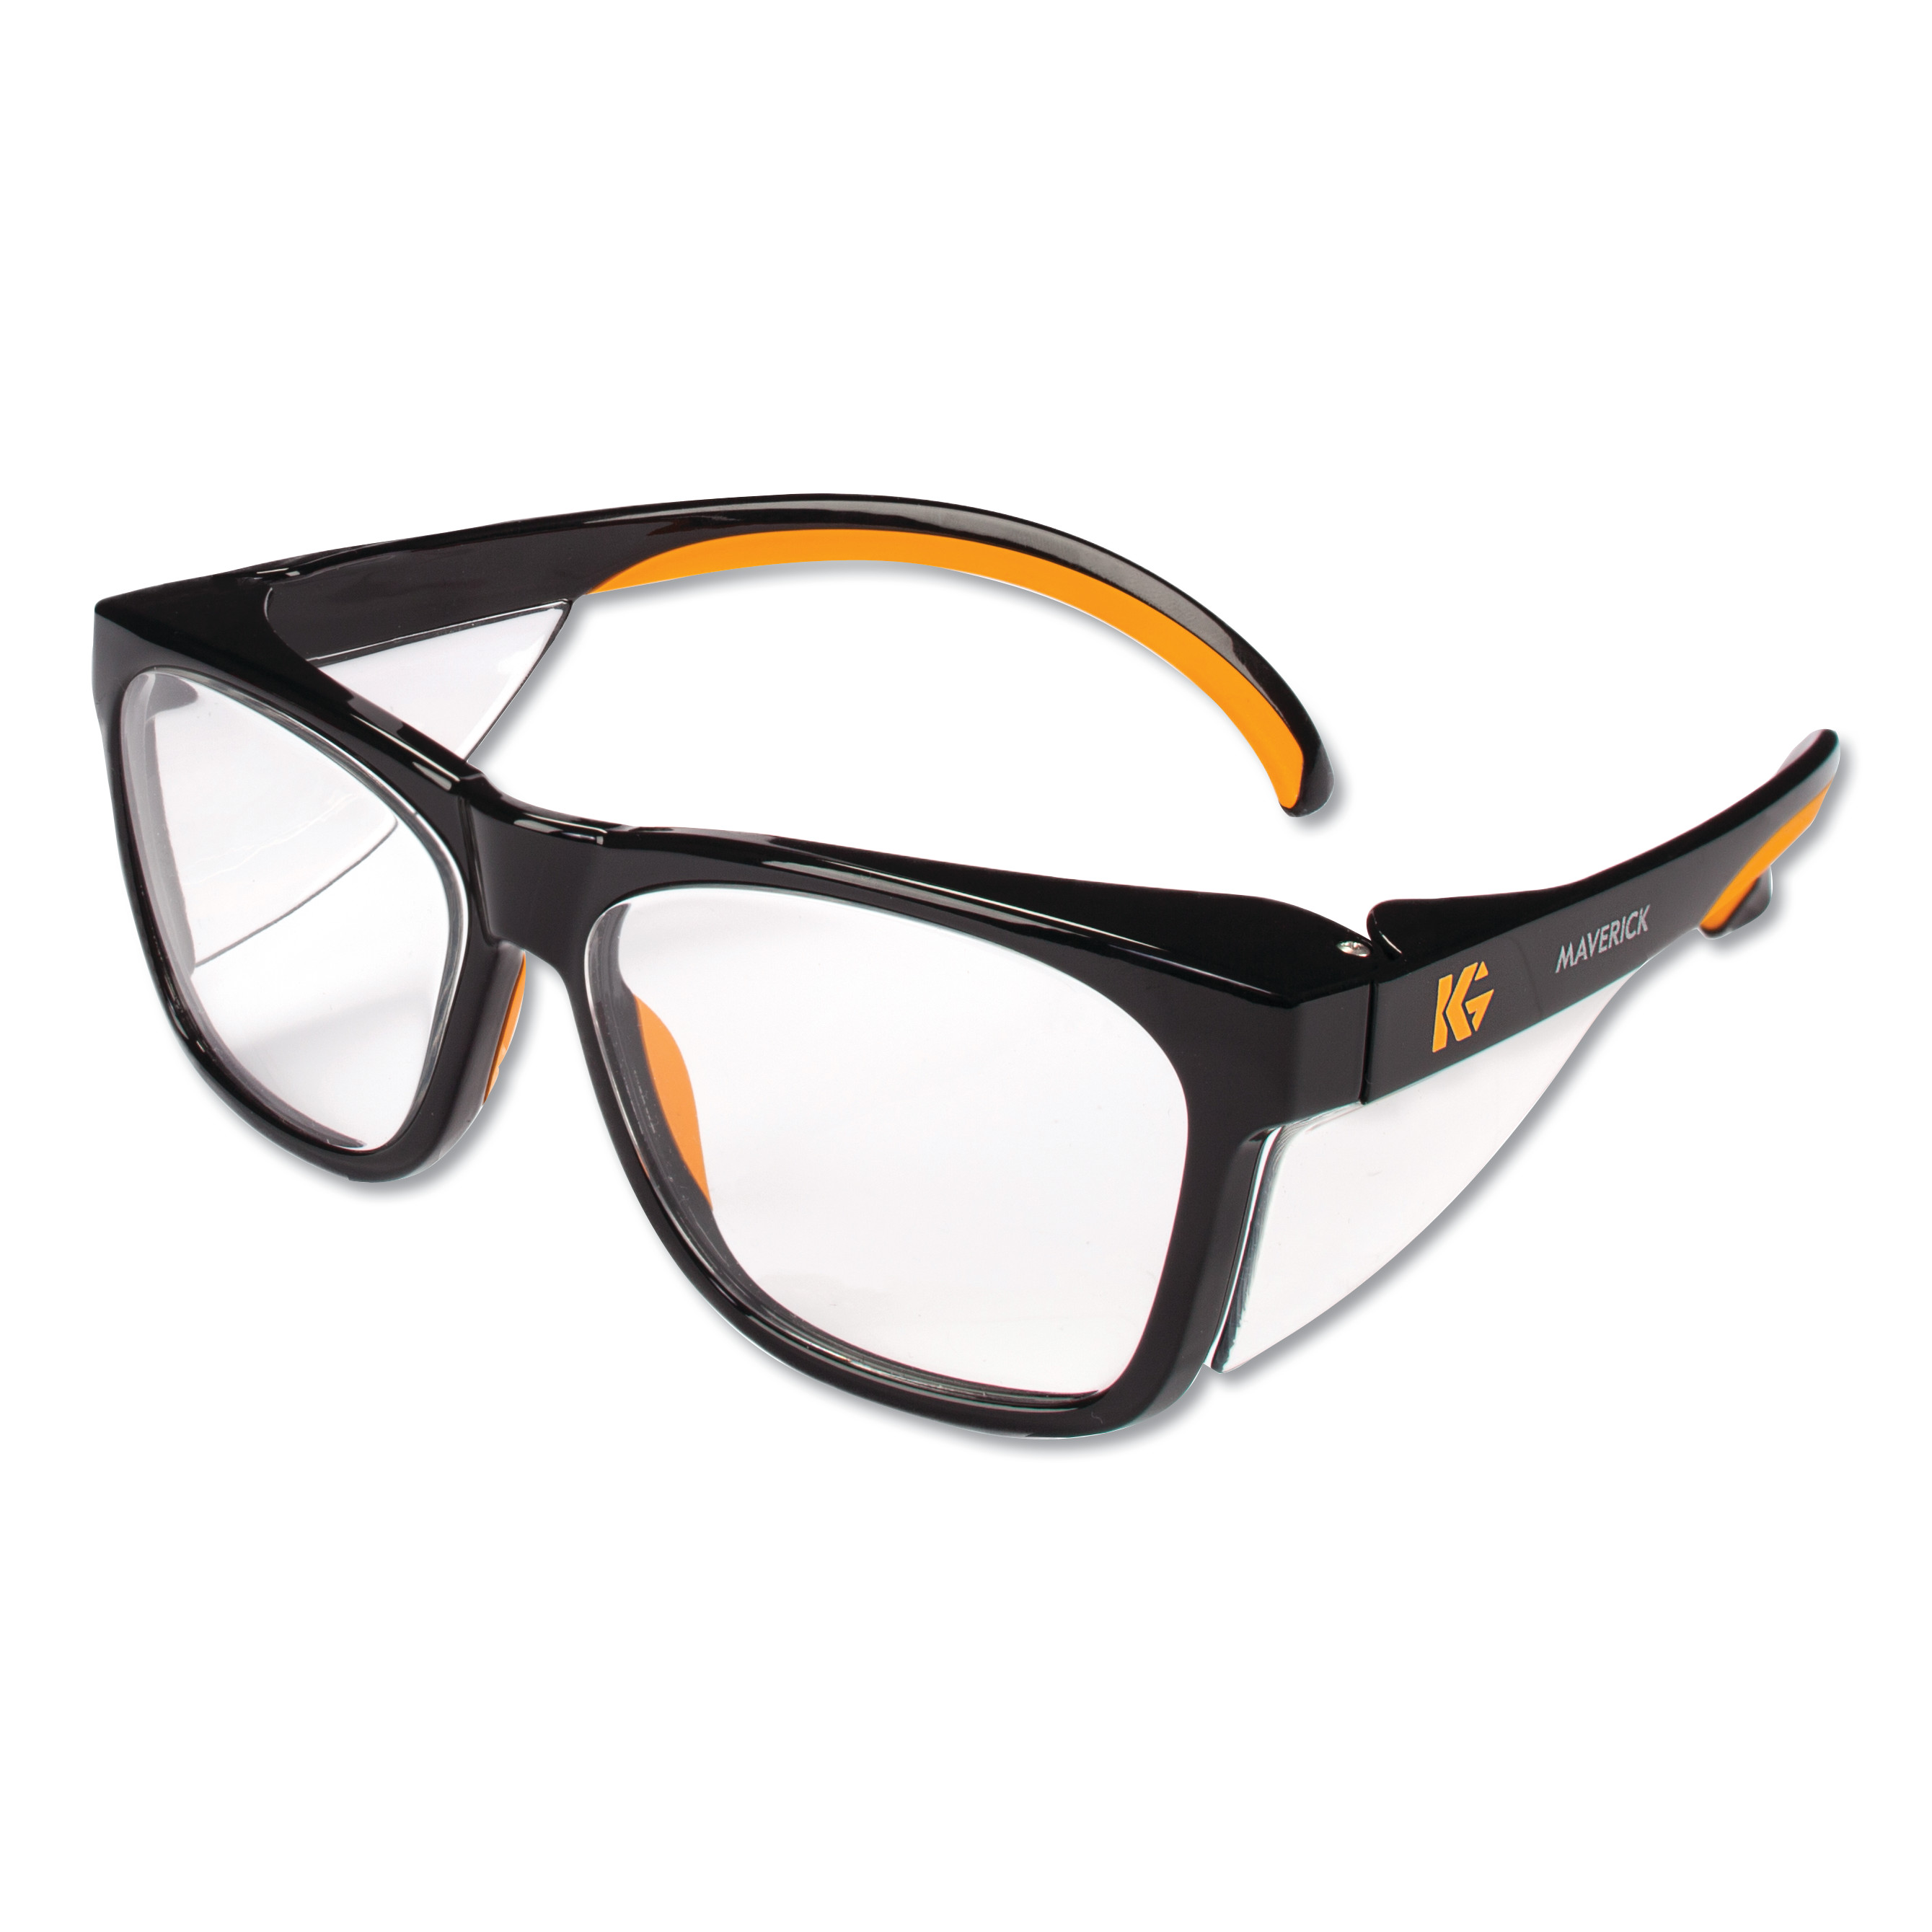  KleenGuard 49312 Maverick Safety Glasses, Black/Orange, Polycarbonate Frame (KCC49312) 